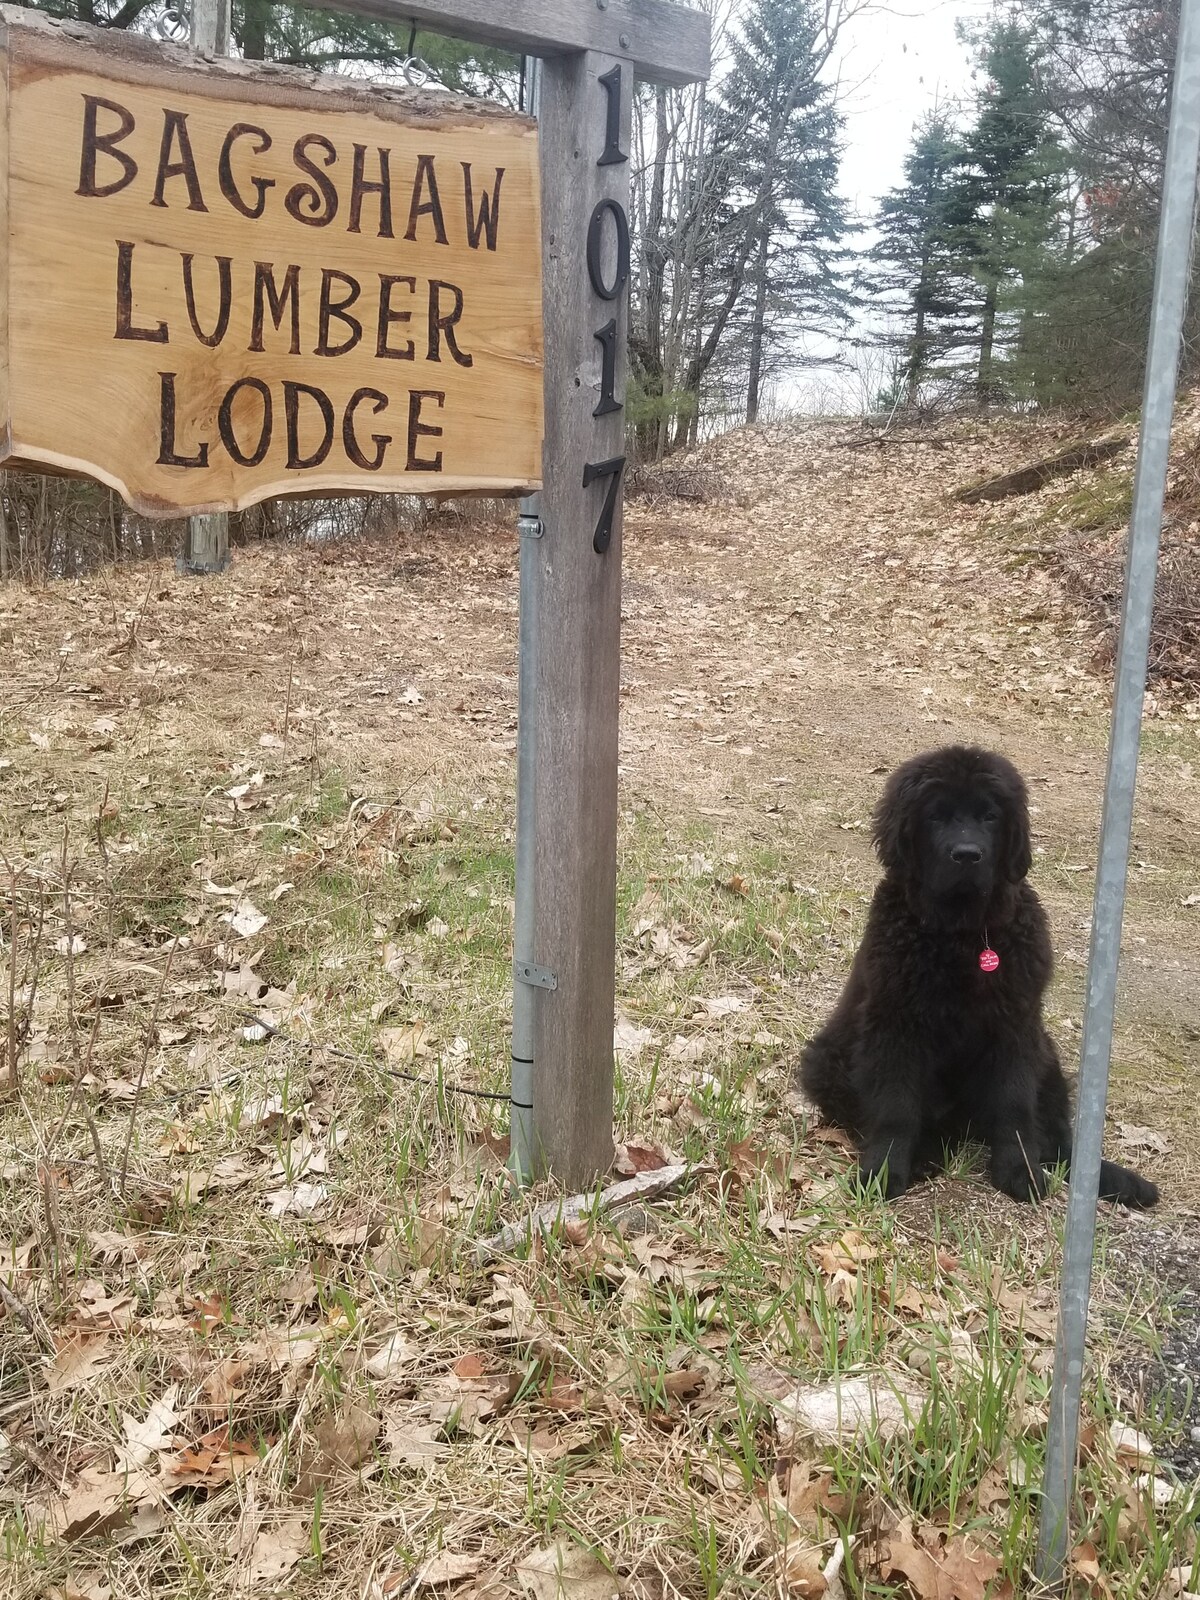 Bagshaw Lumber Lodge